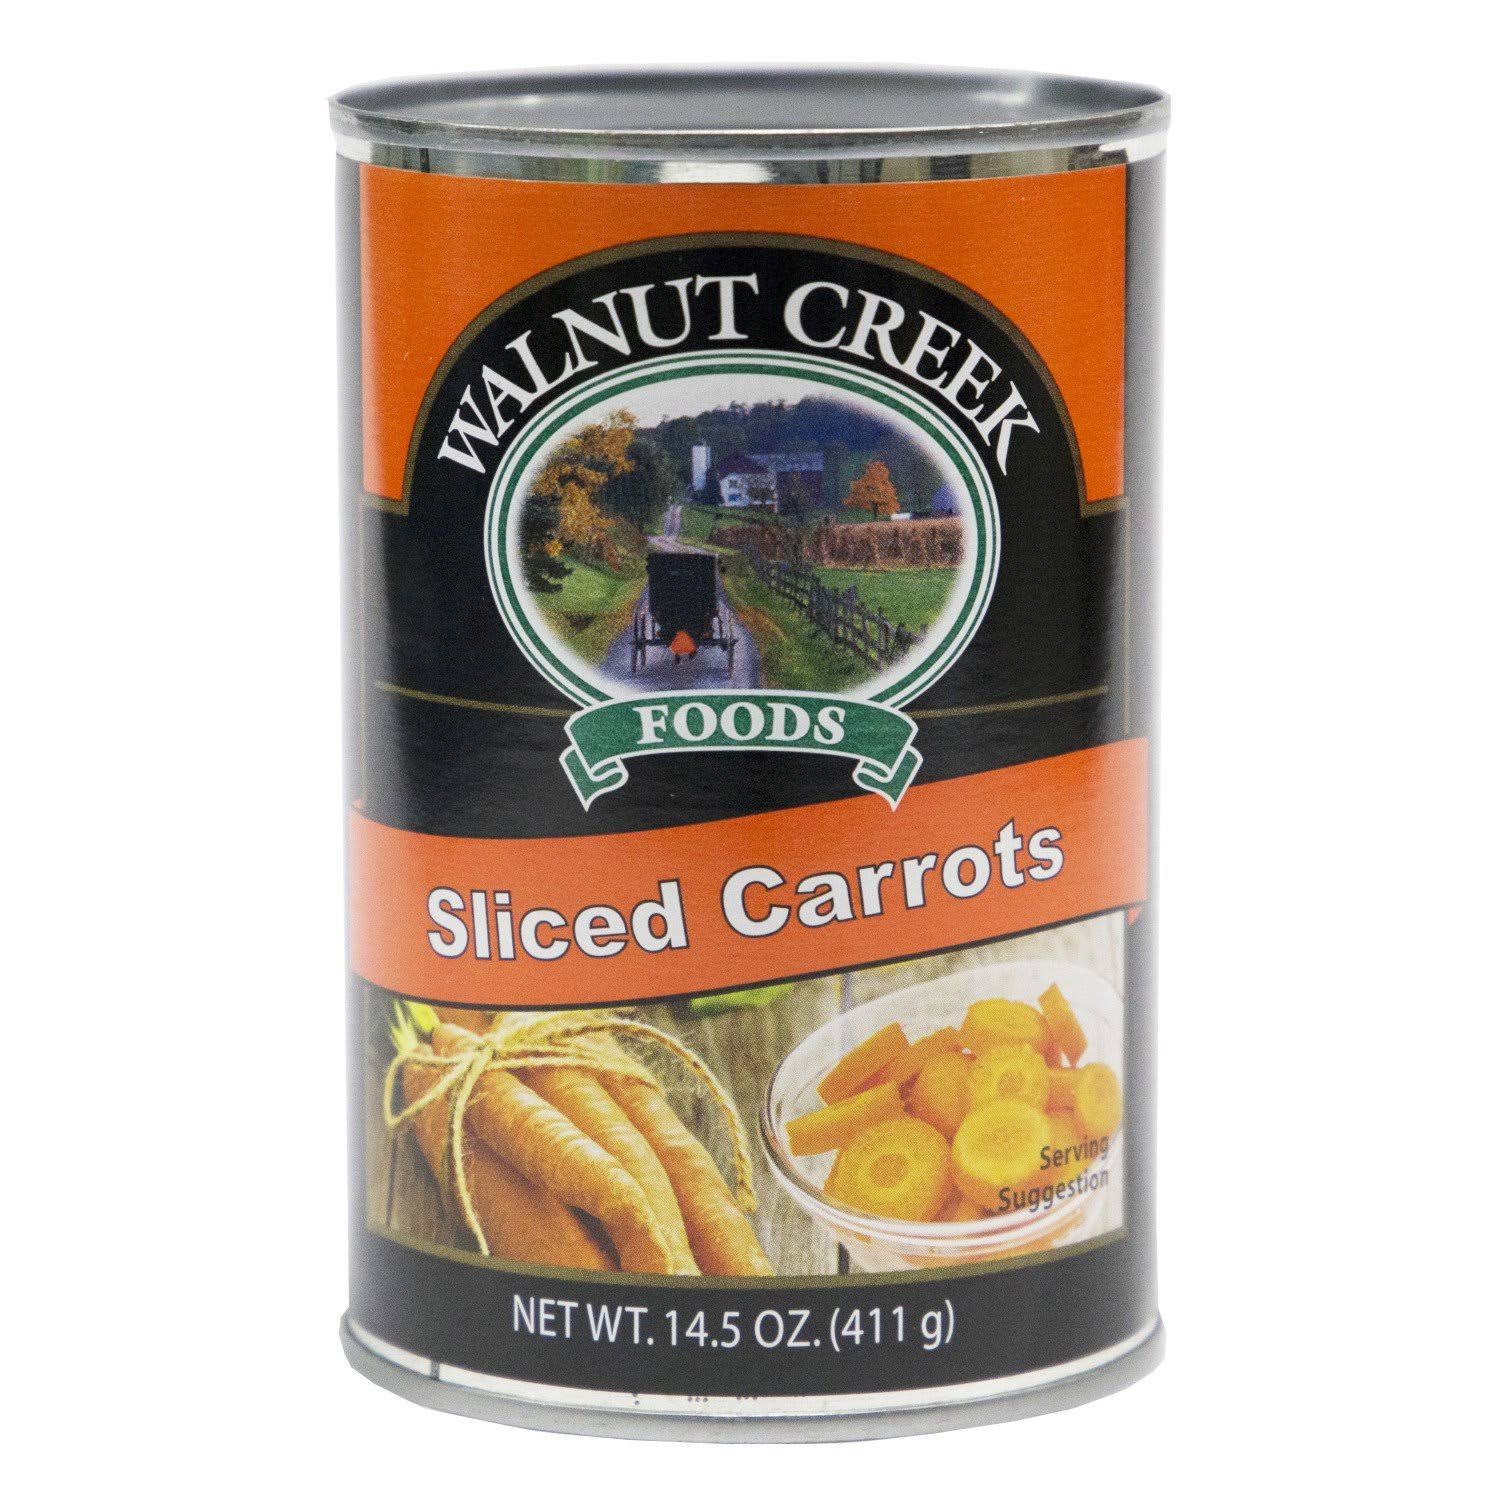 Walnut Creek Sliced Carrots